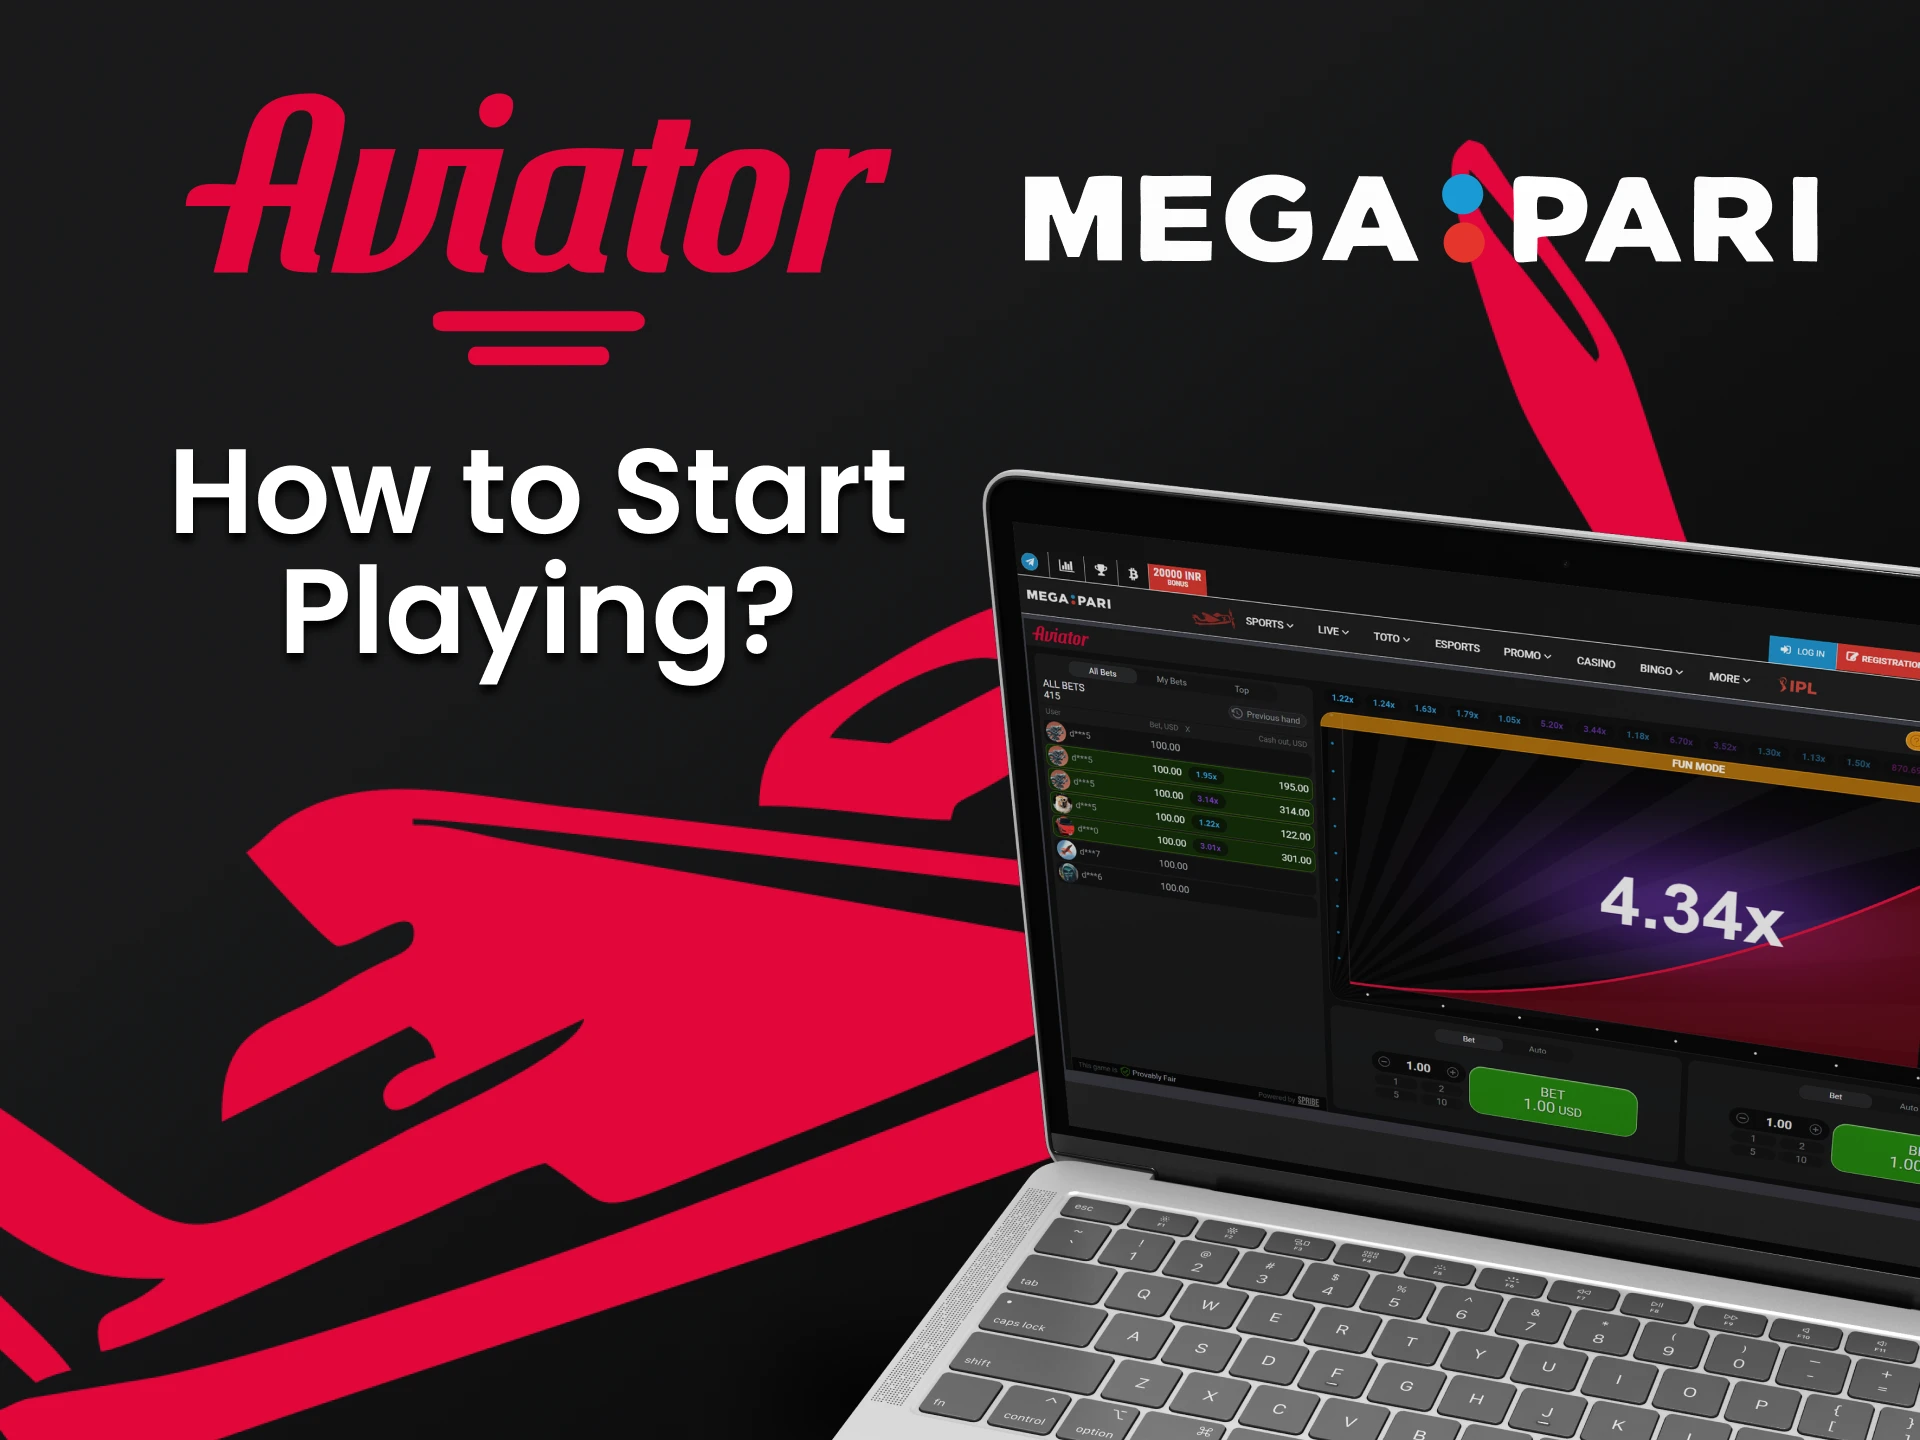 Go to the Megapari website to play Aviator.